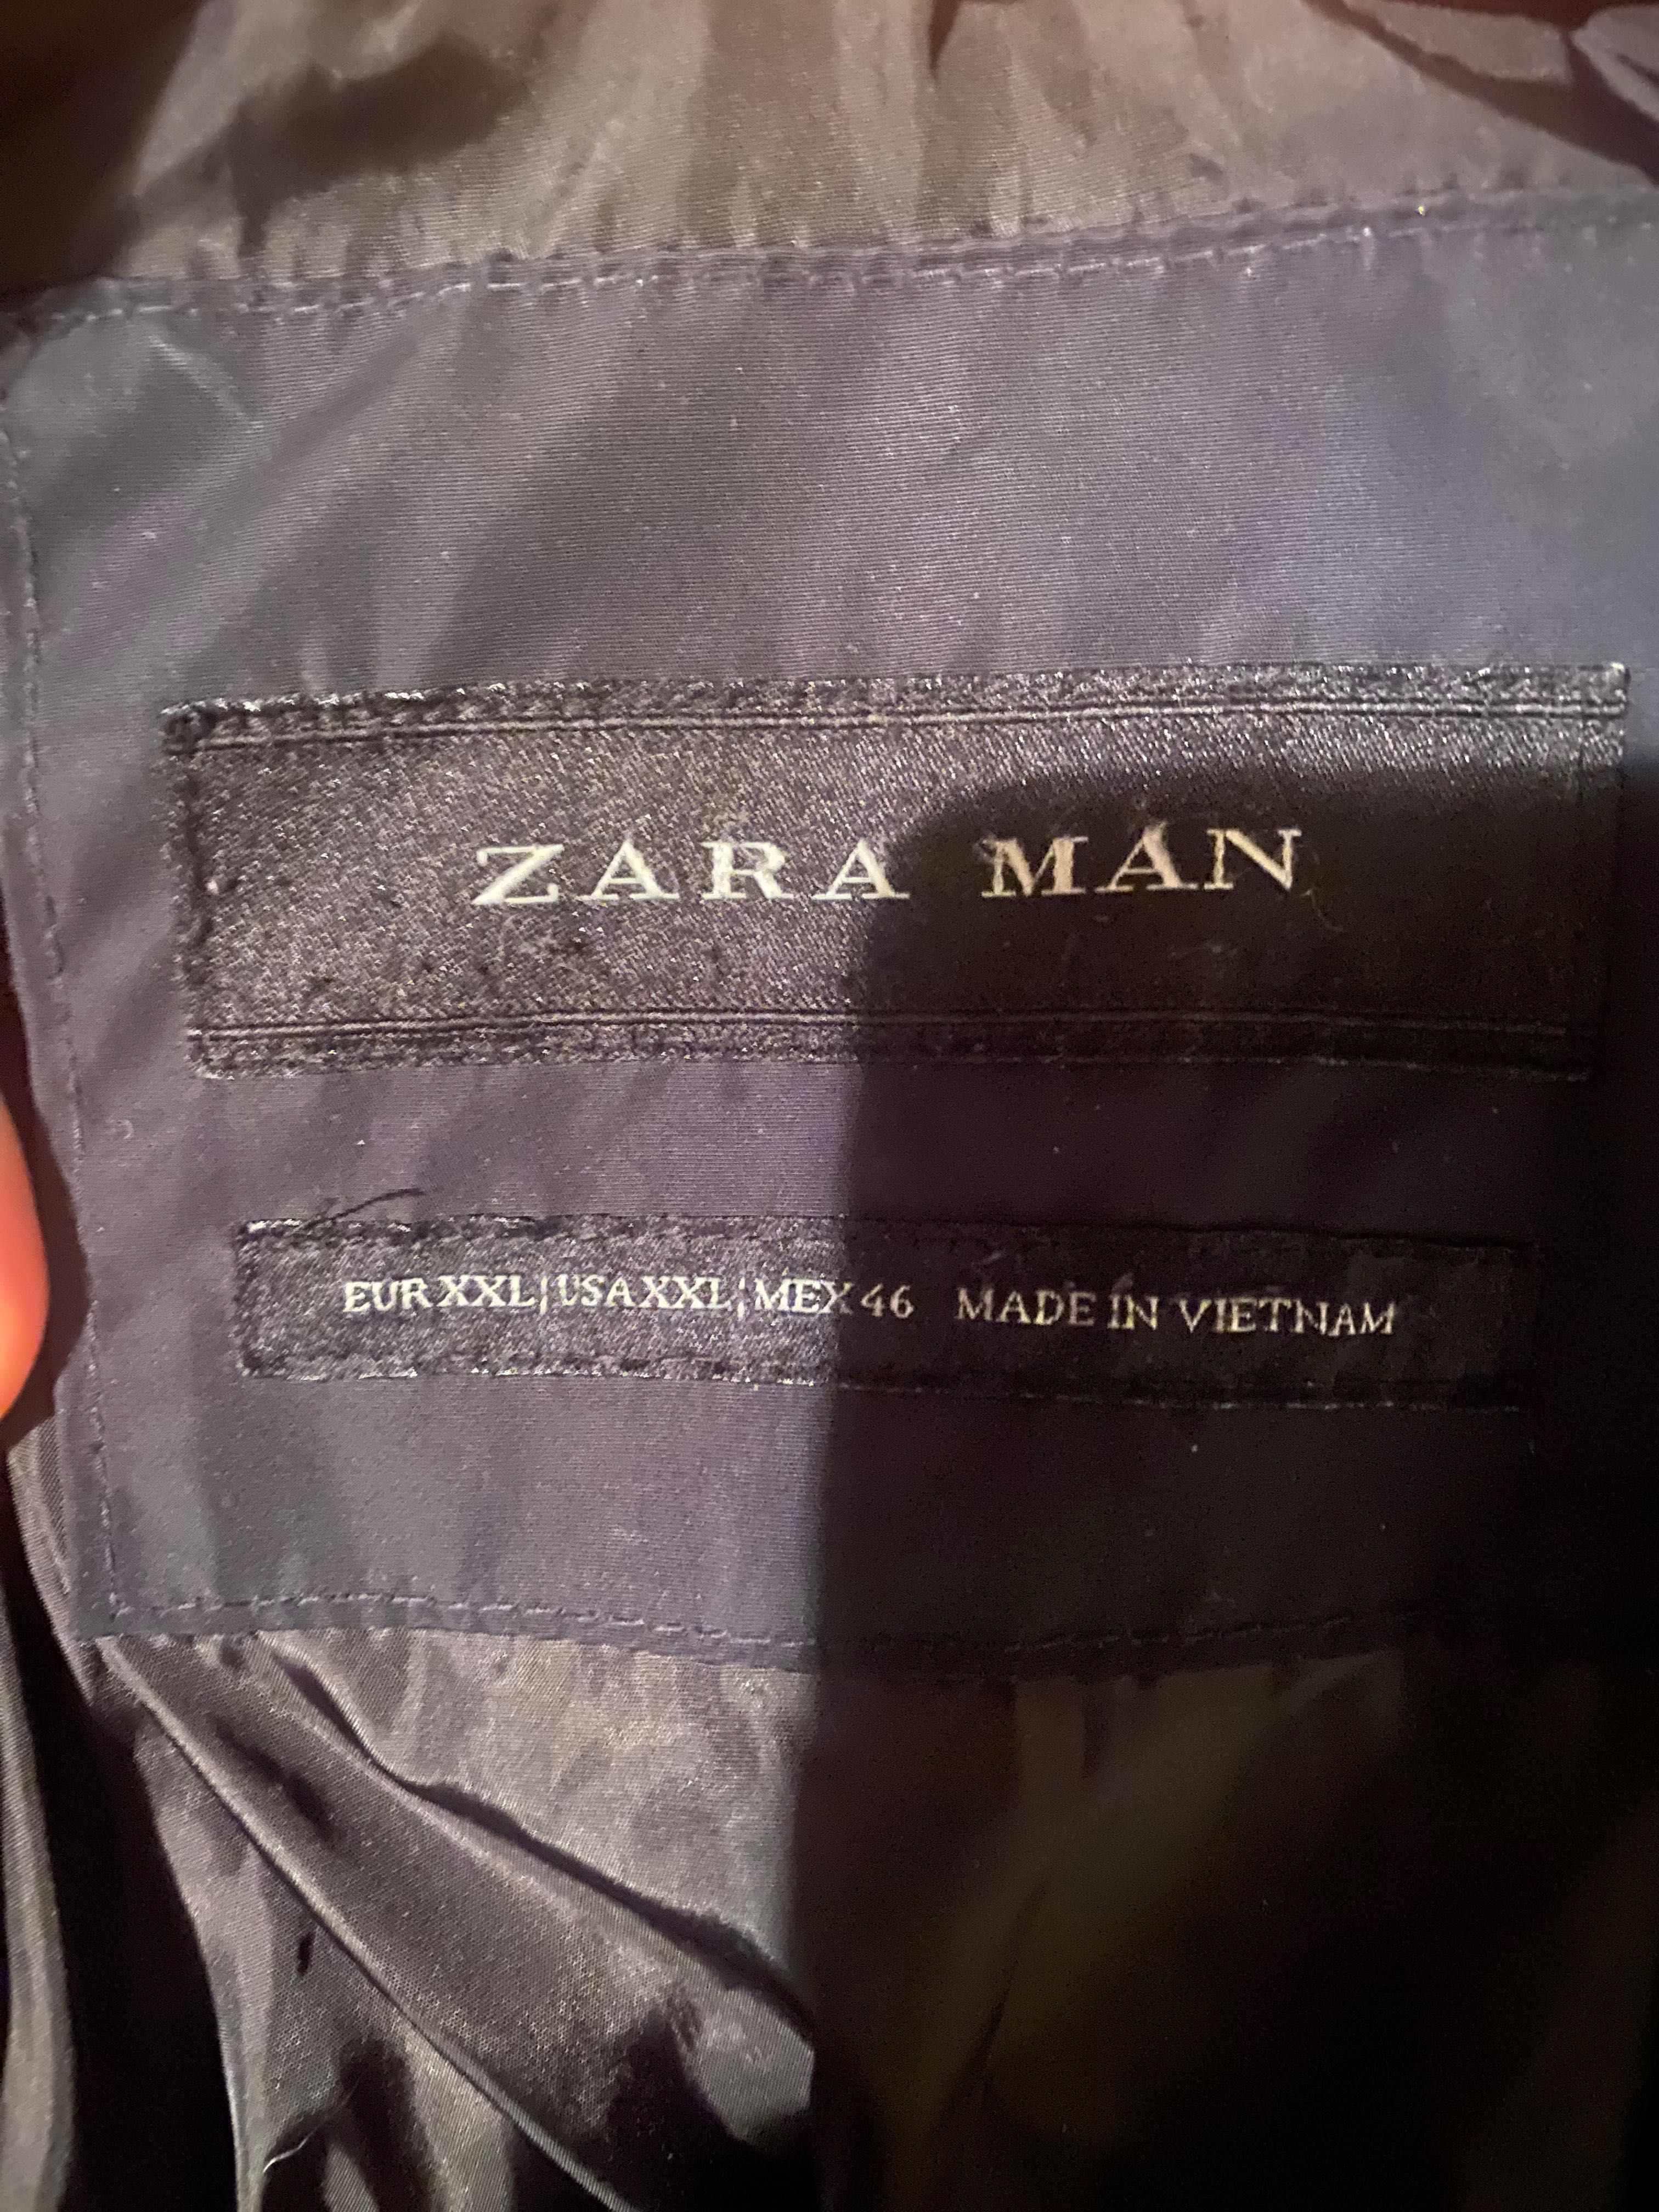 Kurtka marki Zara Man, w rozmiarze 2XL